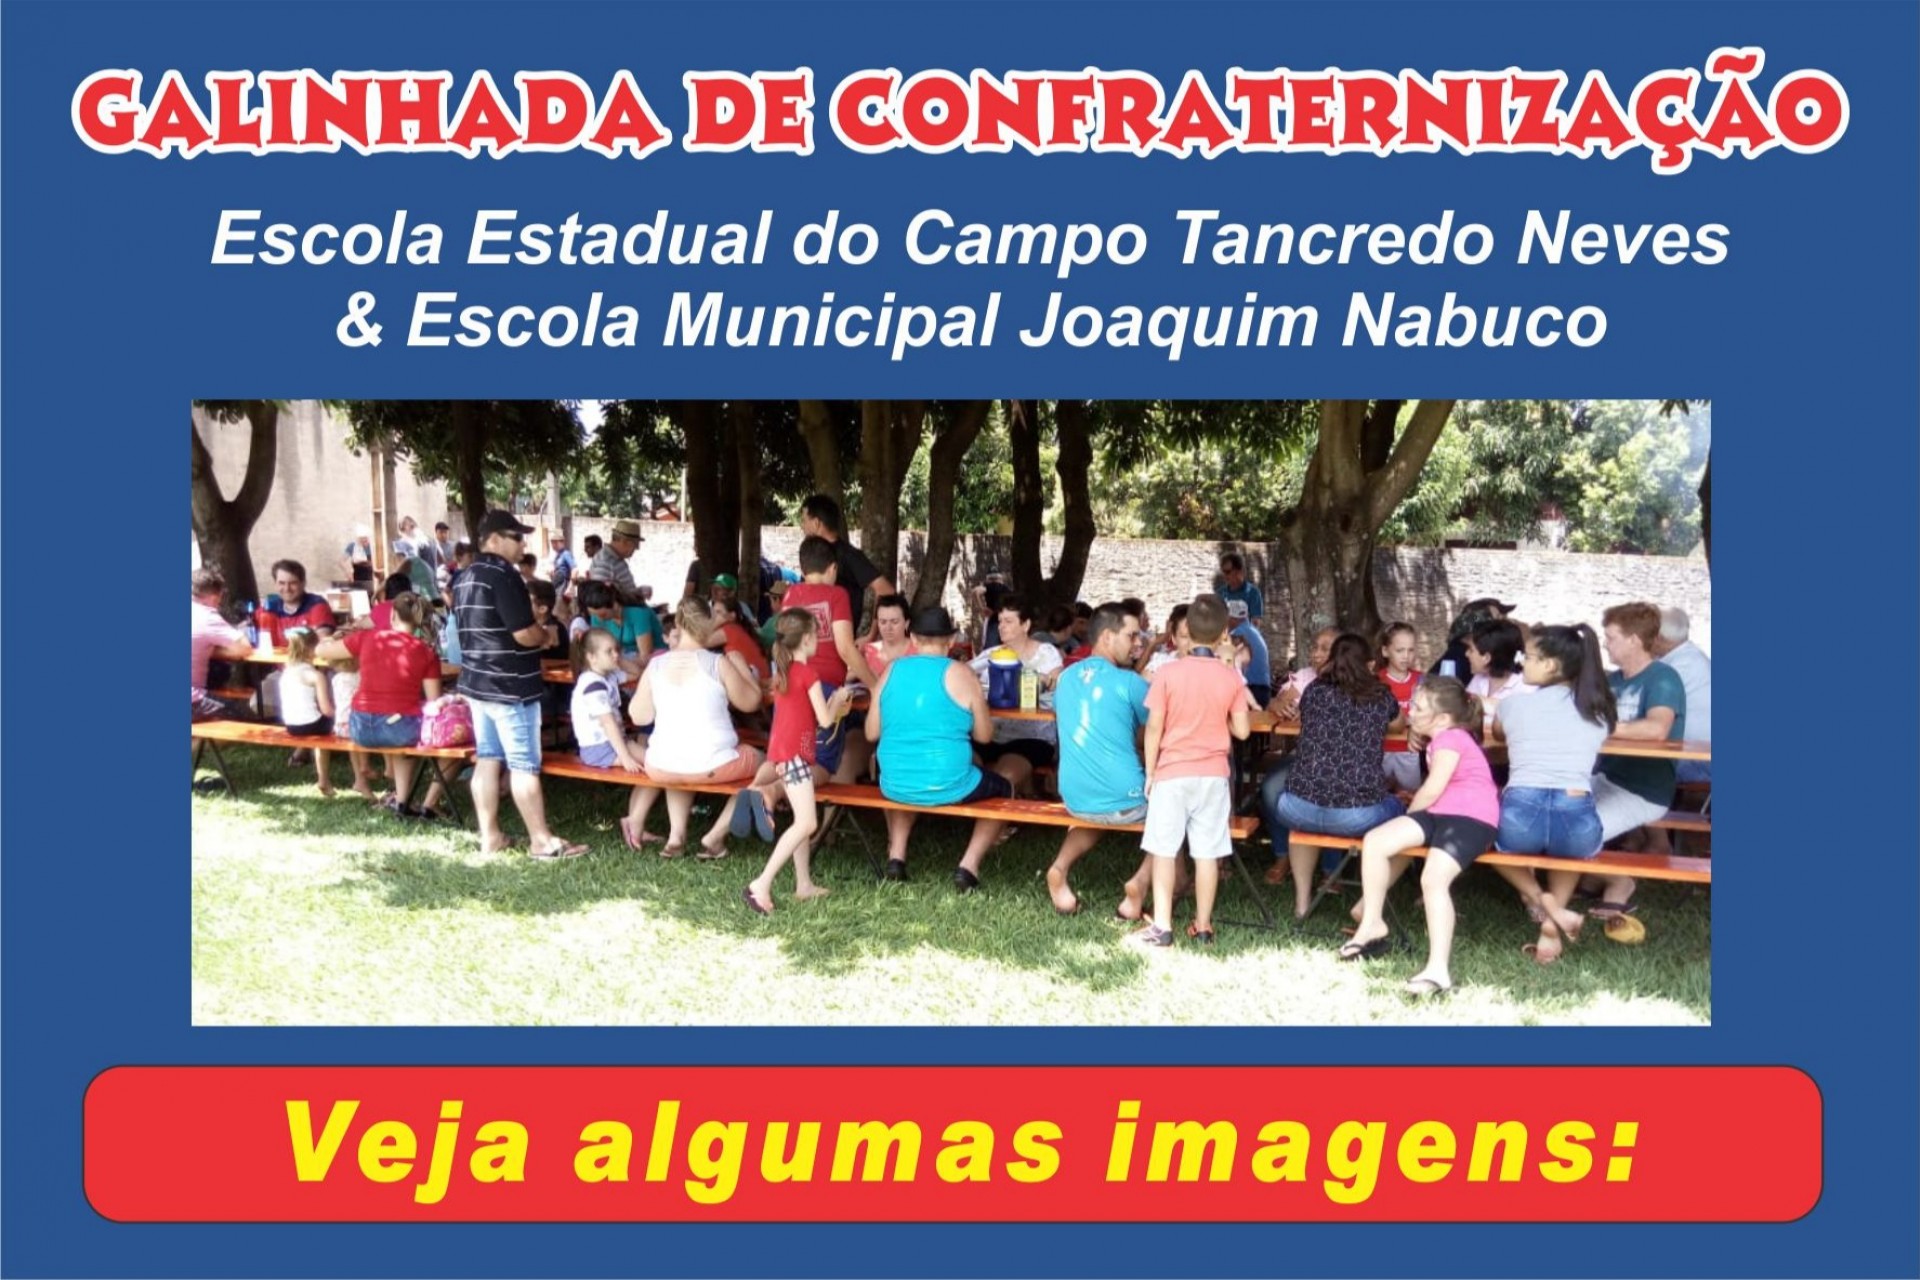 Galinhada de Confraternização da Escola do Campo Tancredo Neves & Escola Joaquim Nabuco